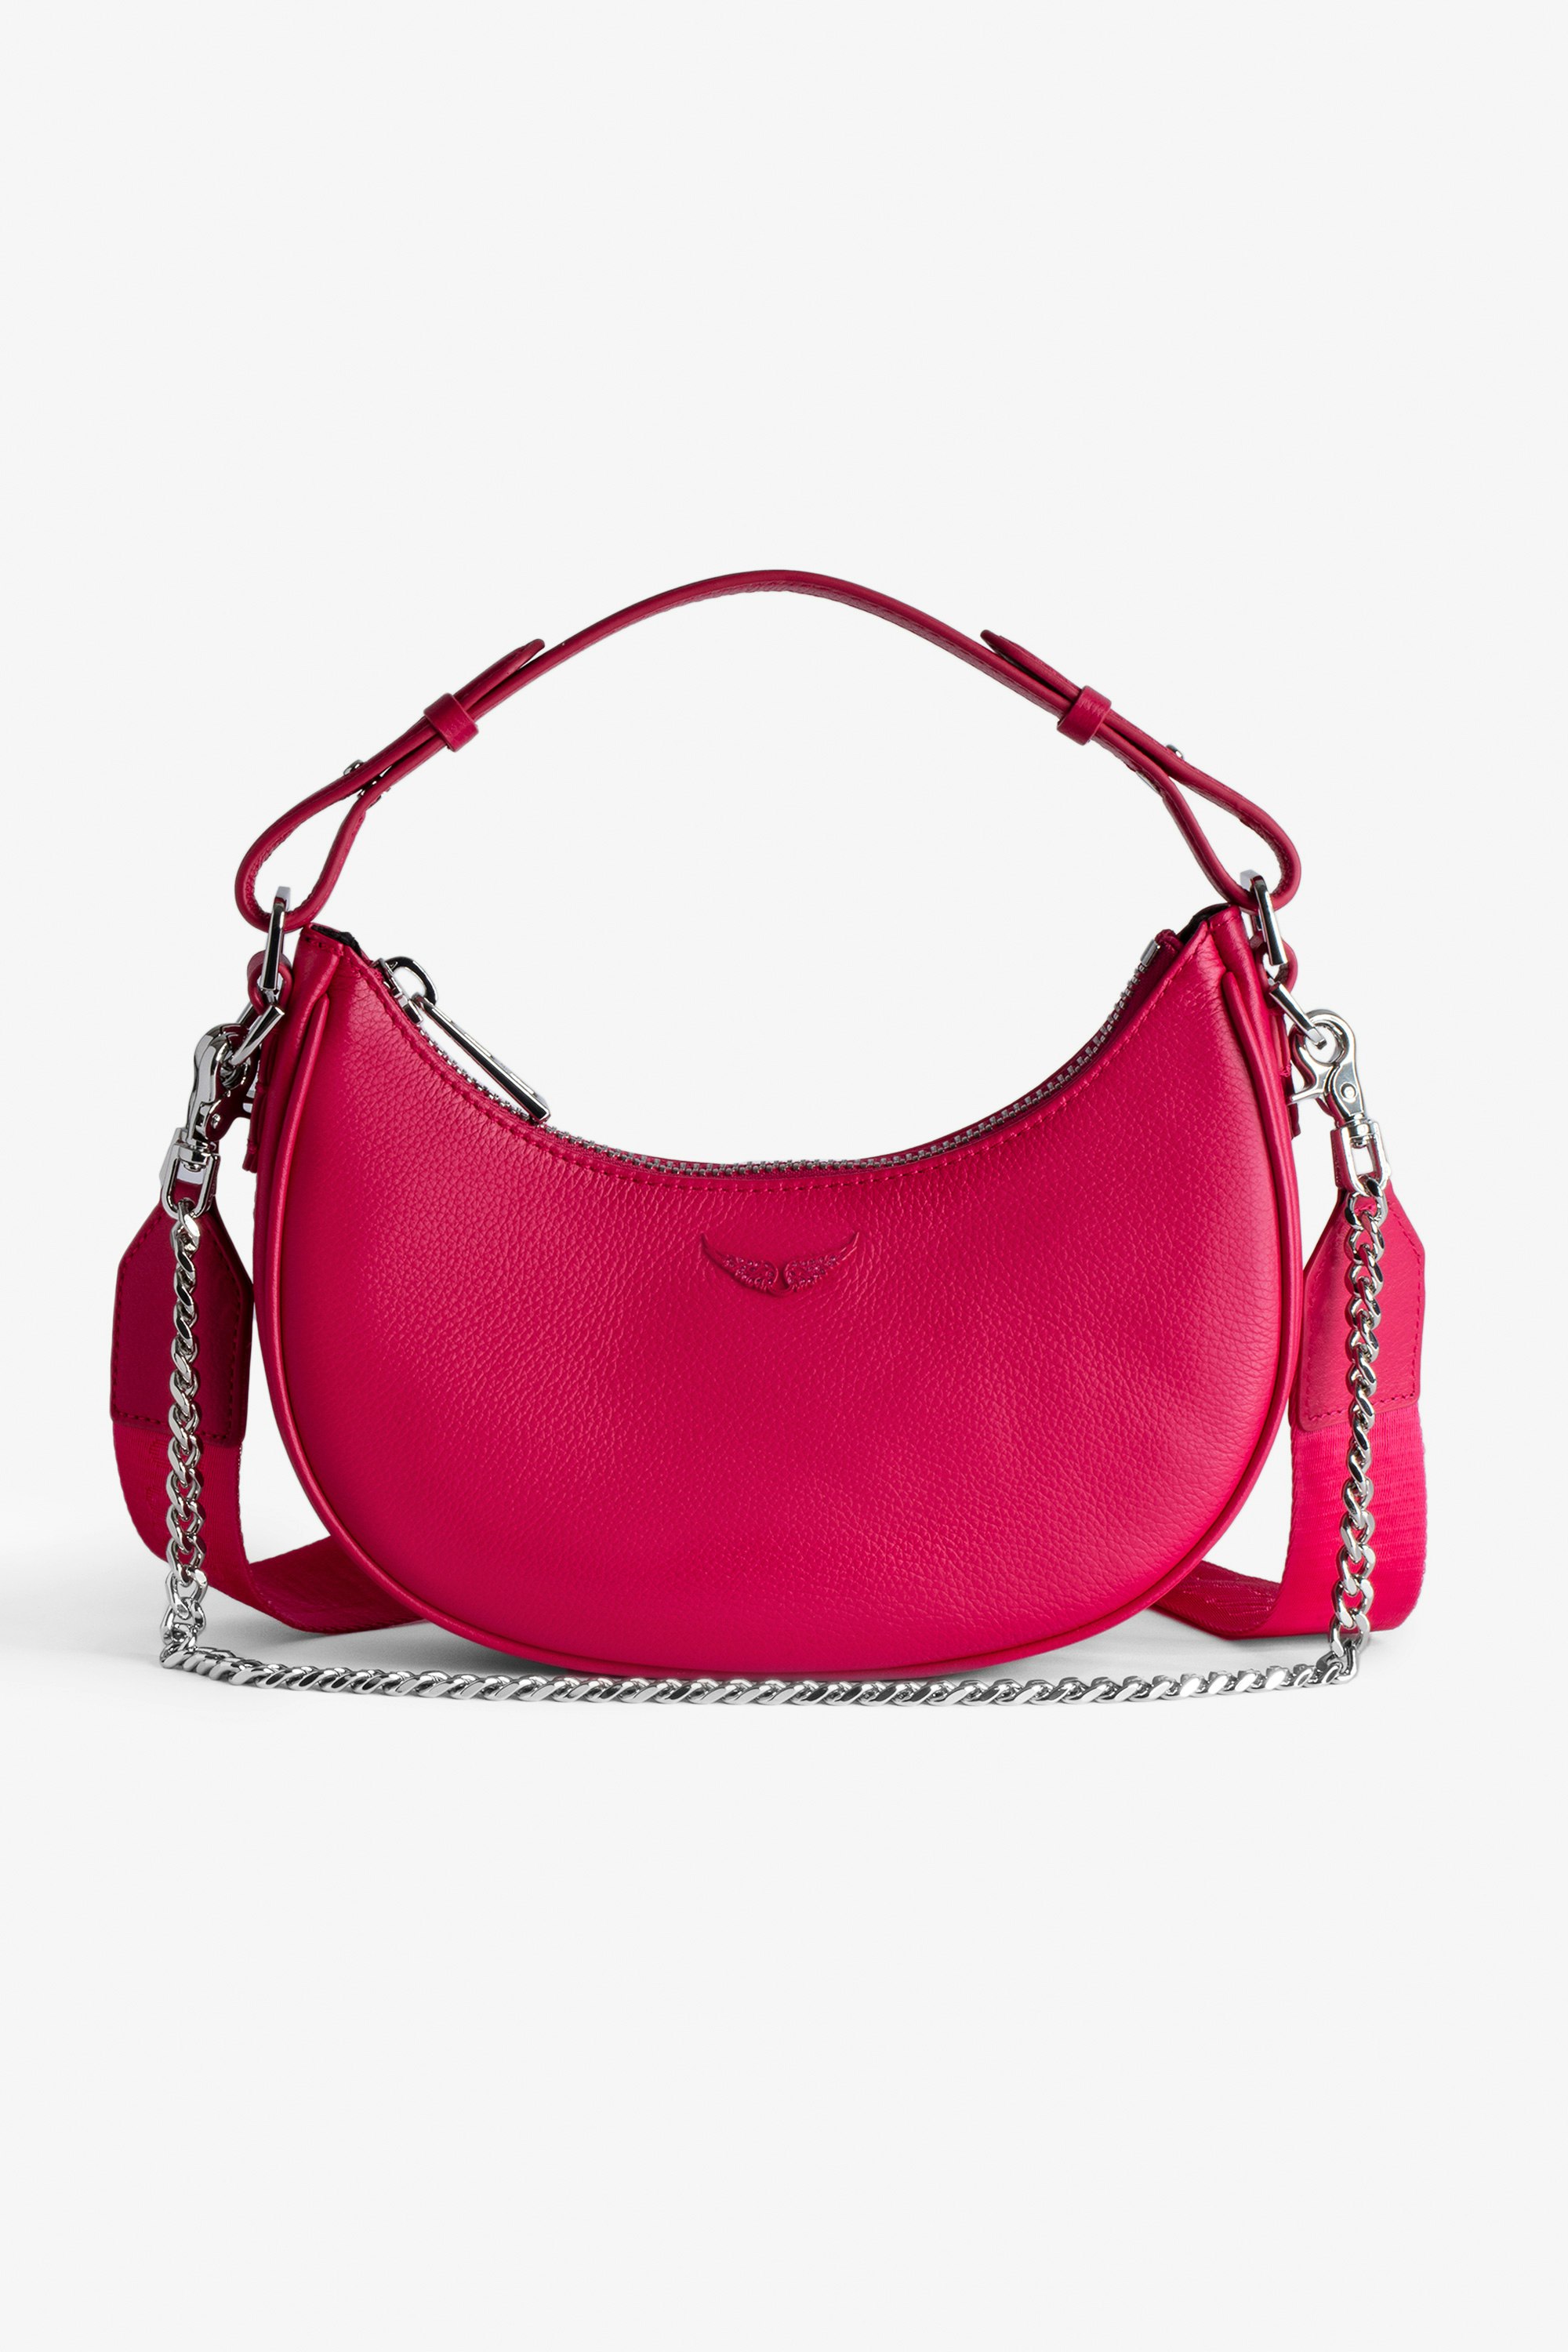 Tasche Moonrock Halbmondtasche für Damen aus rosafarbenem, genarbtem Leder mit kurzem Henkel, Schulterriemen, Kette und Signature-Flügeln.